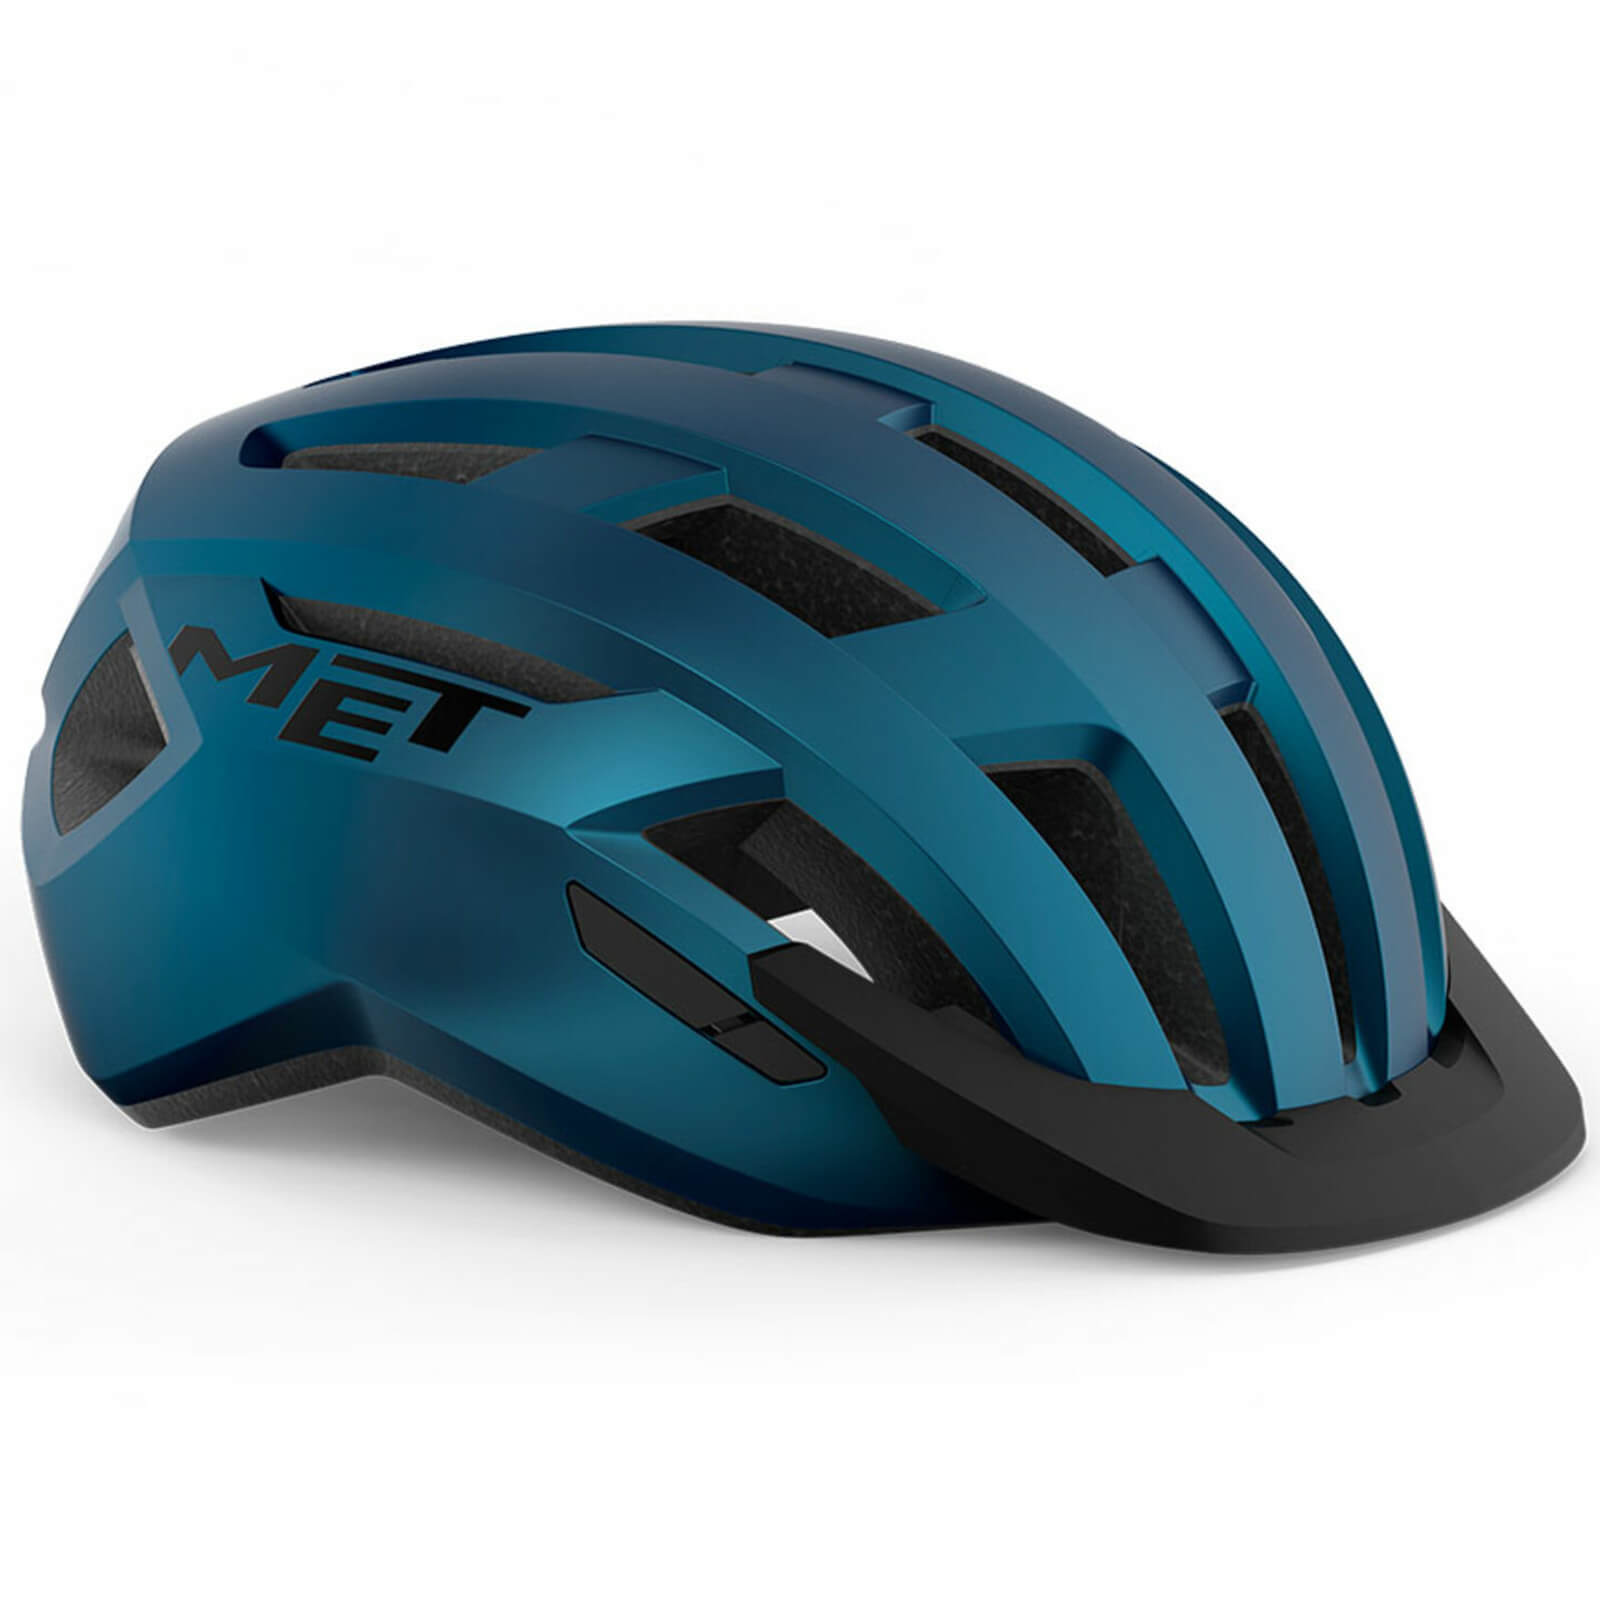 MET AllRoad MIPS Helmet - S - Blue Metallic